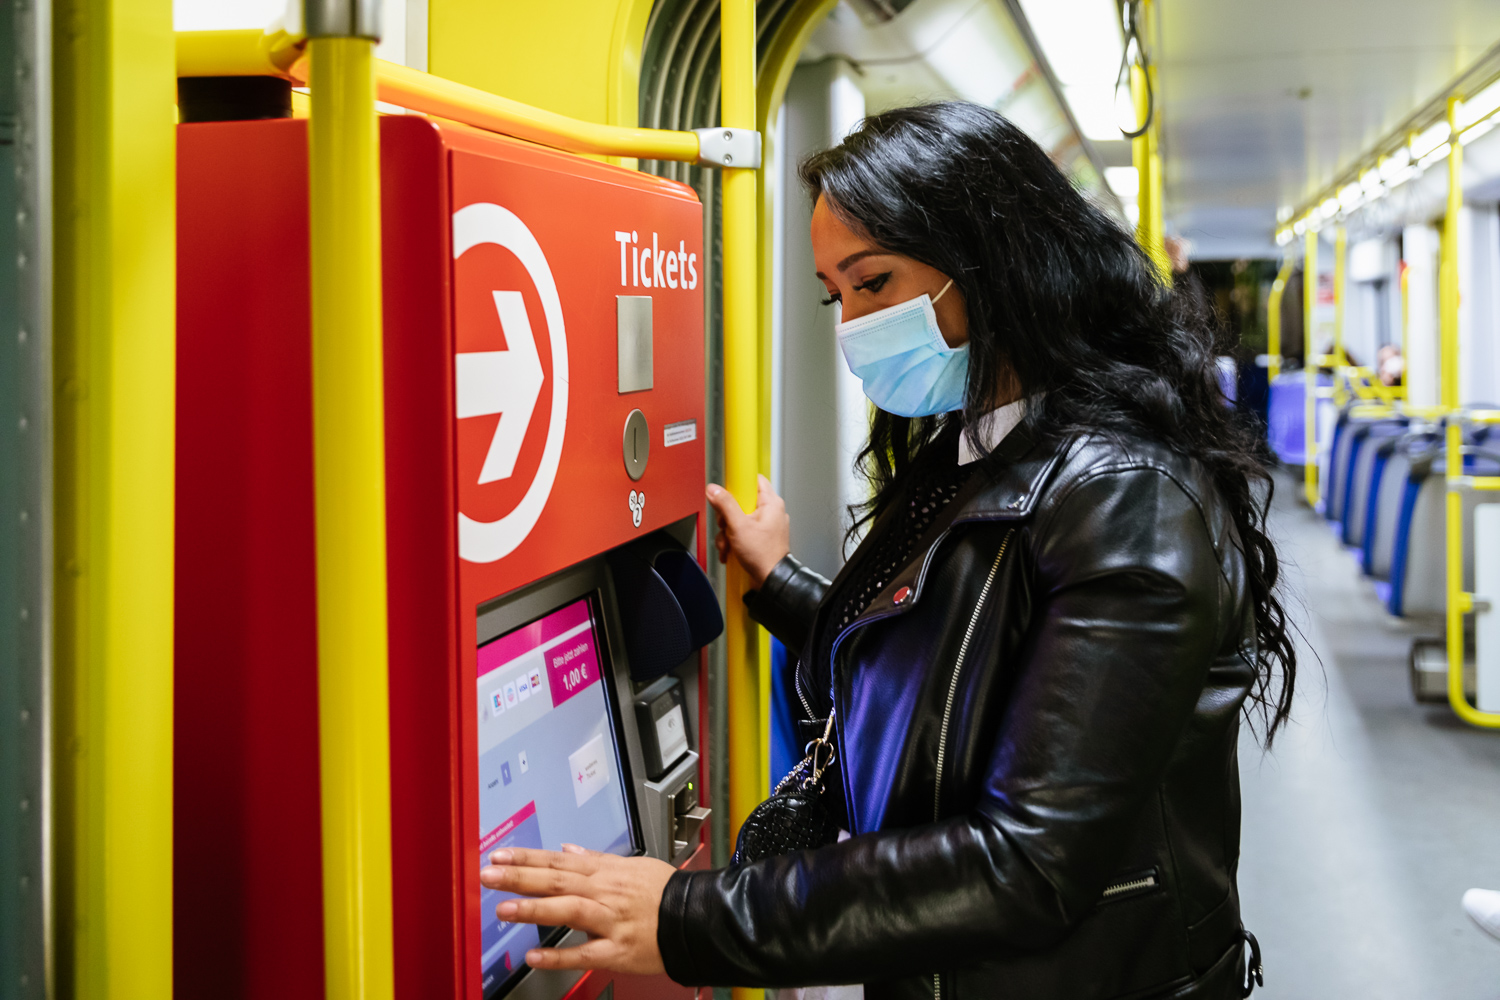 Eine Person steht vor einem Fahrkartenautomat // Foto: VRS GmbH/Smilla Dankert